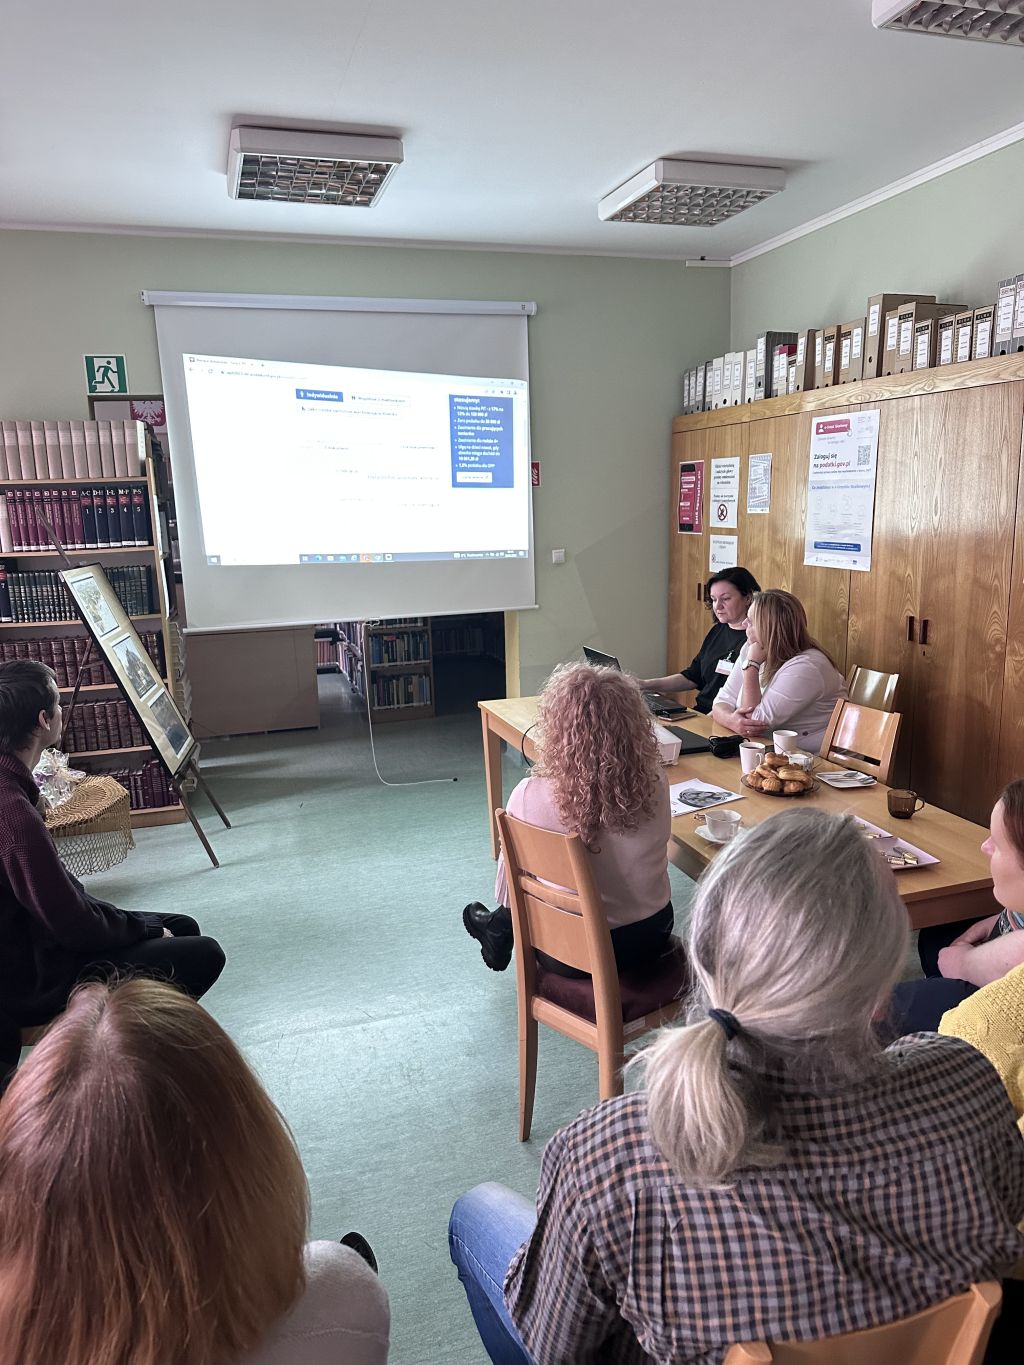 Szkolenie dla bibliotekarzy przeprowadzone przez pracowników Urzędu Skarbowego w Zgorzelcu. Zdjęcie jest odnośnikiem do wpisu 